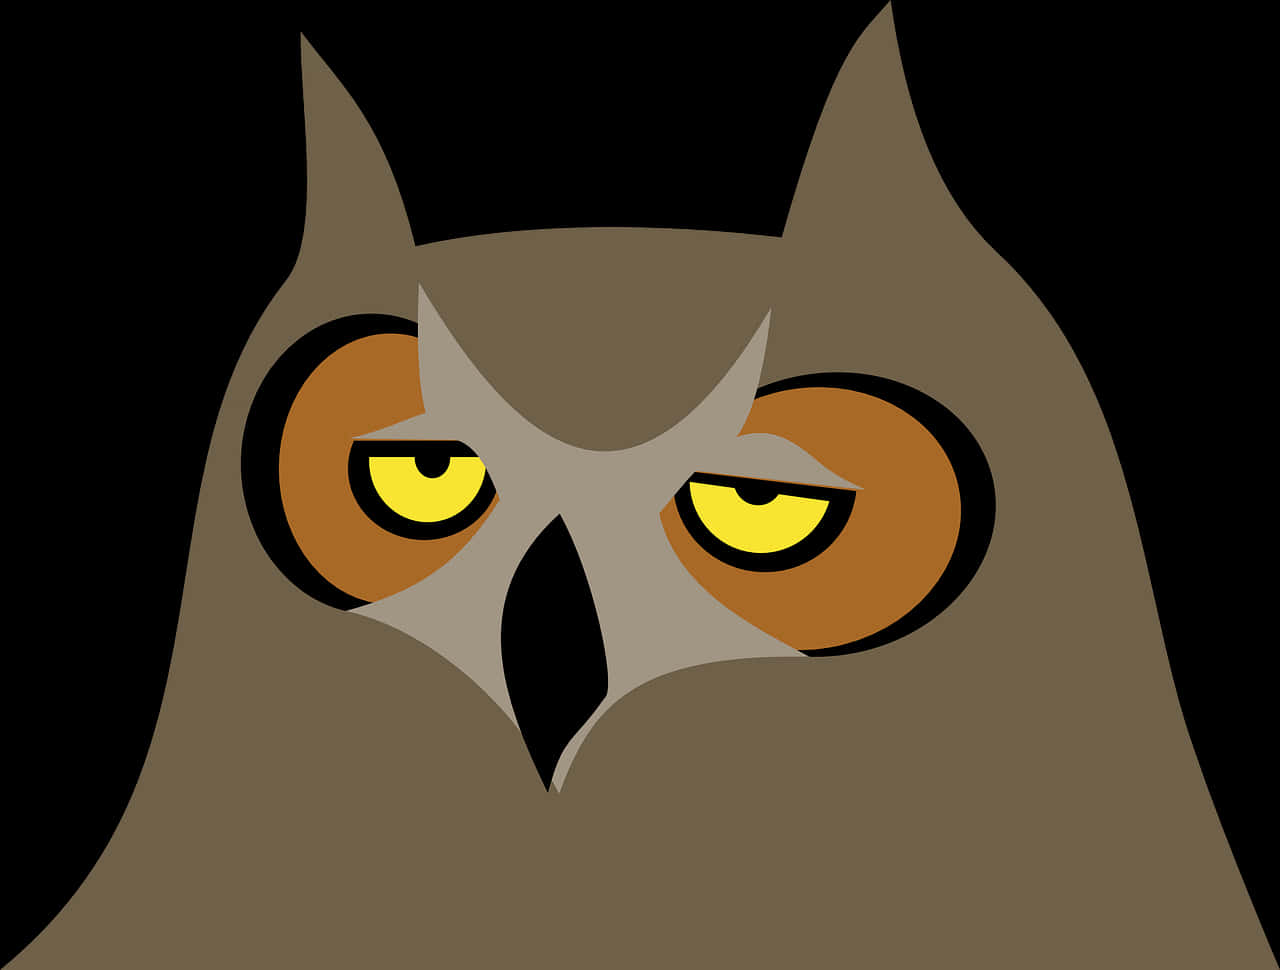 Stylized Owl Illustration